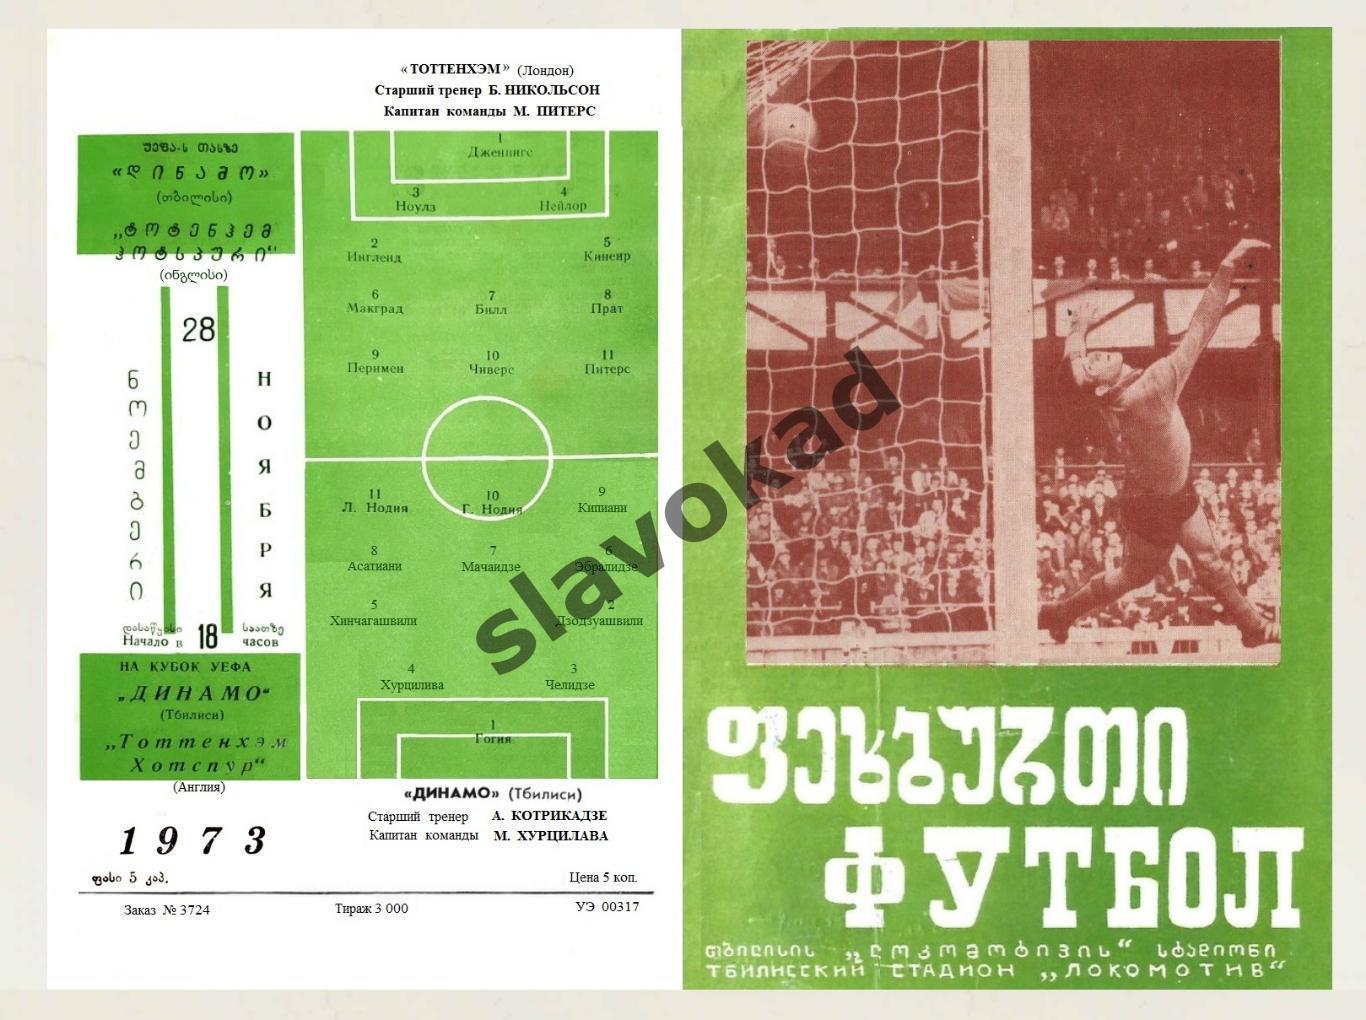 Динамо Тбилиси - Тоттенхэм Англия 1973 - Кубок УЕФА - КОПИЯ